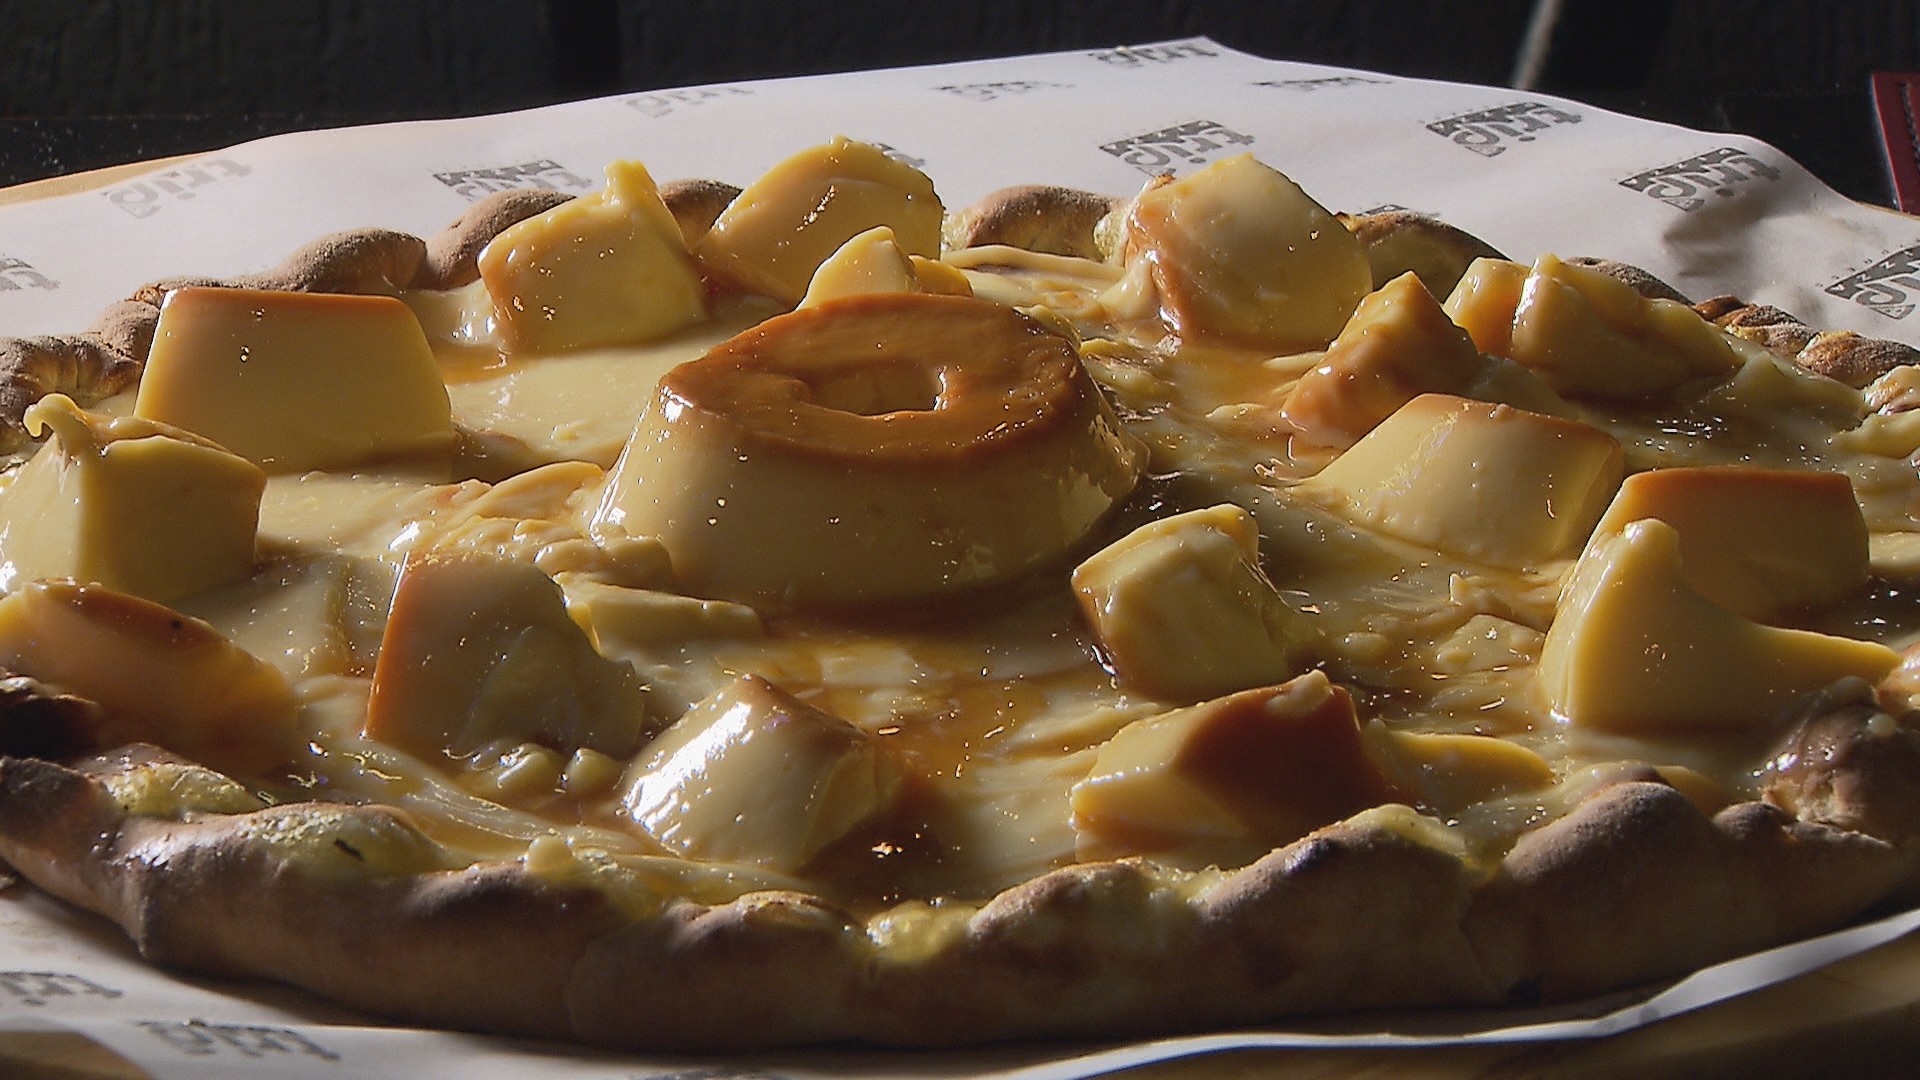 Pizza de pudim, de whey e de bolo de cenoura viram carro-chefe em pizzarias do Paraná: 'Sempre inovando', diz proprietário